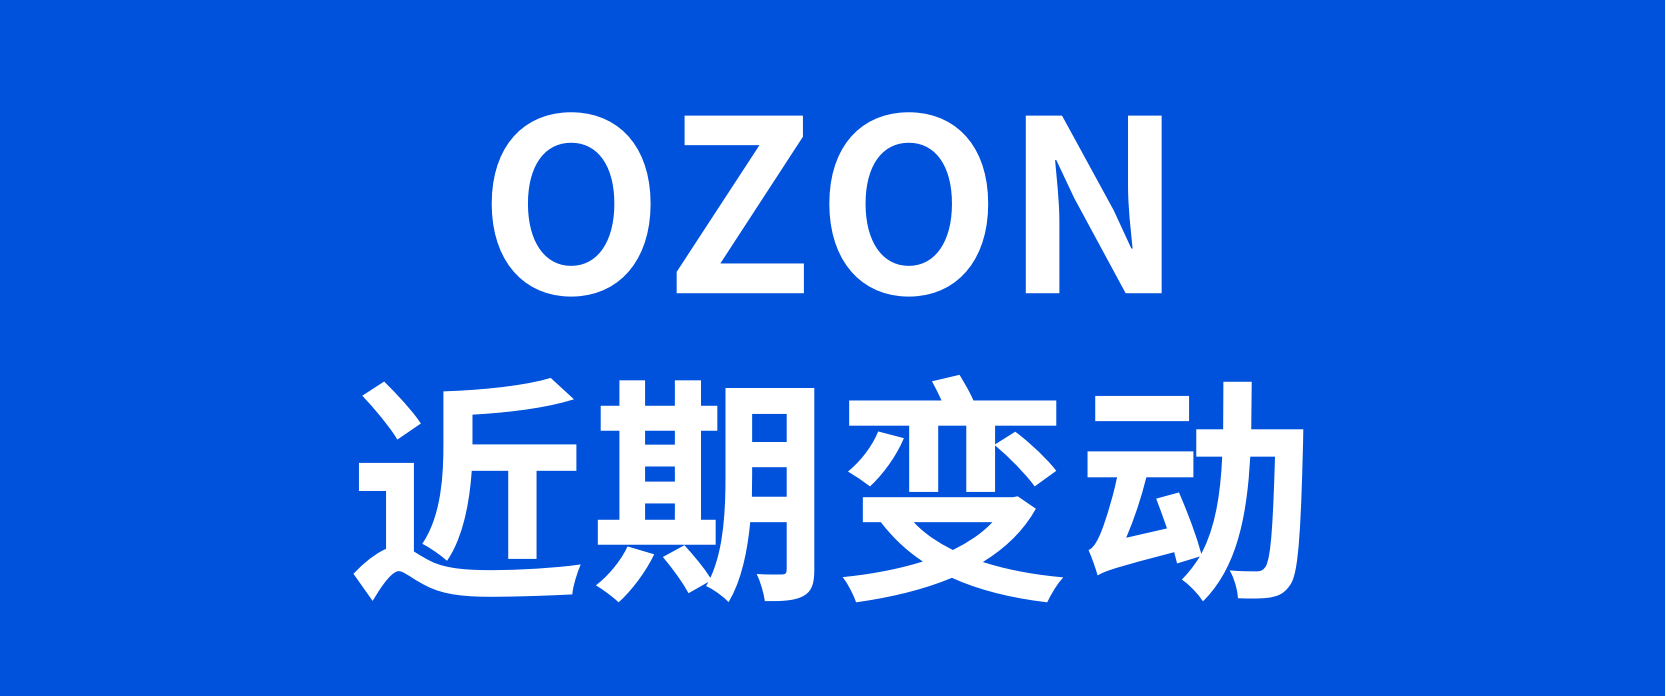 OZON近期消息汇总：新增两个物流渠道；O!Sale促销活动报名即将截止；pingpong收款上线